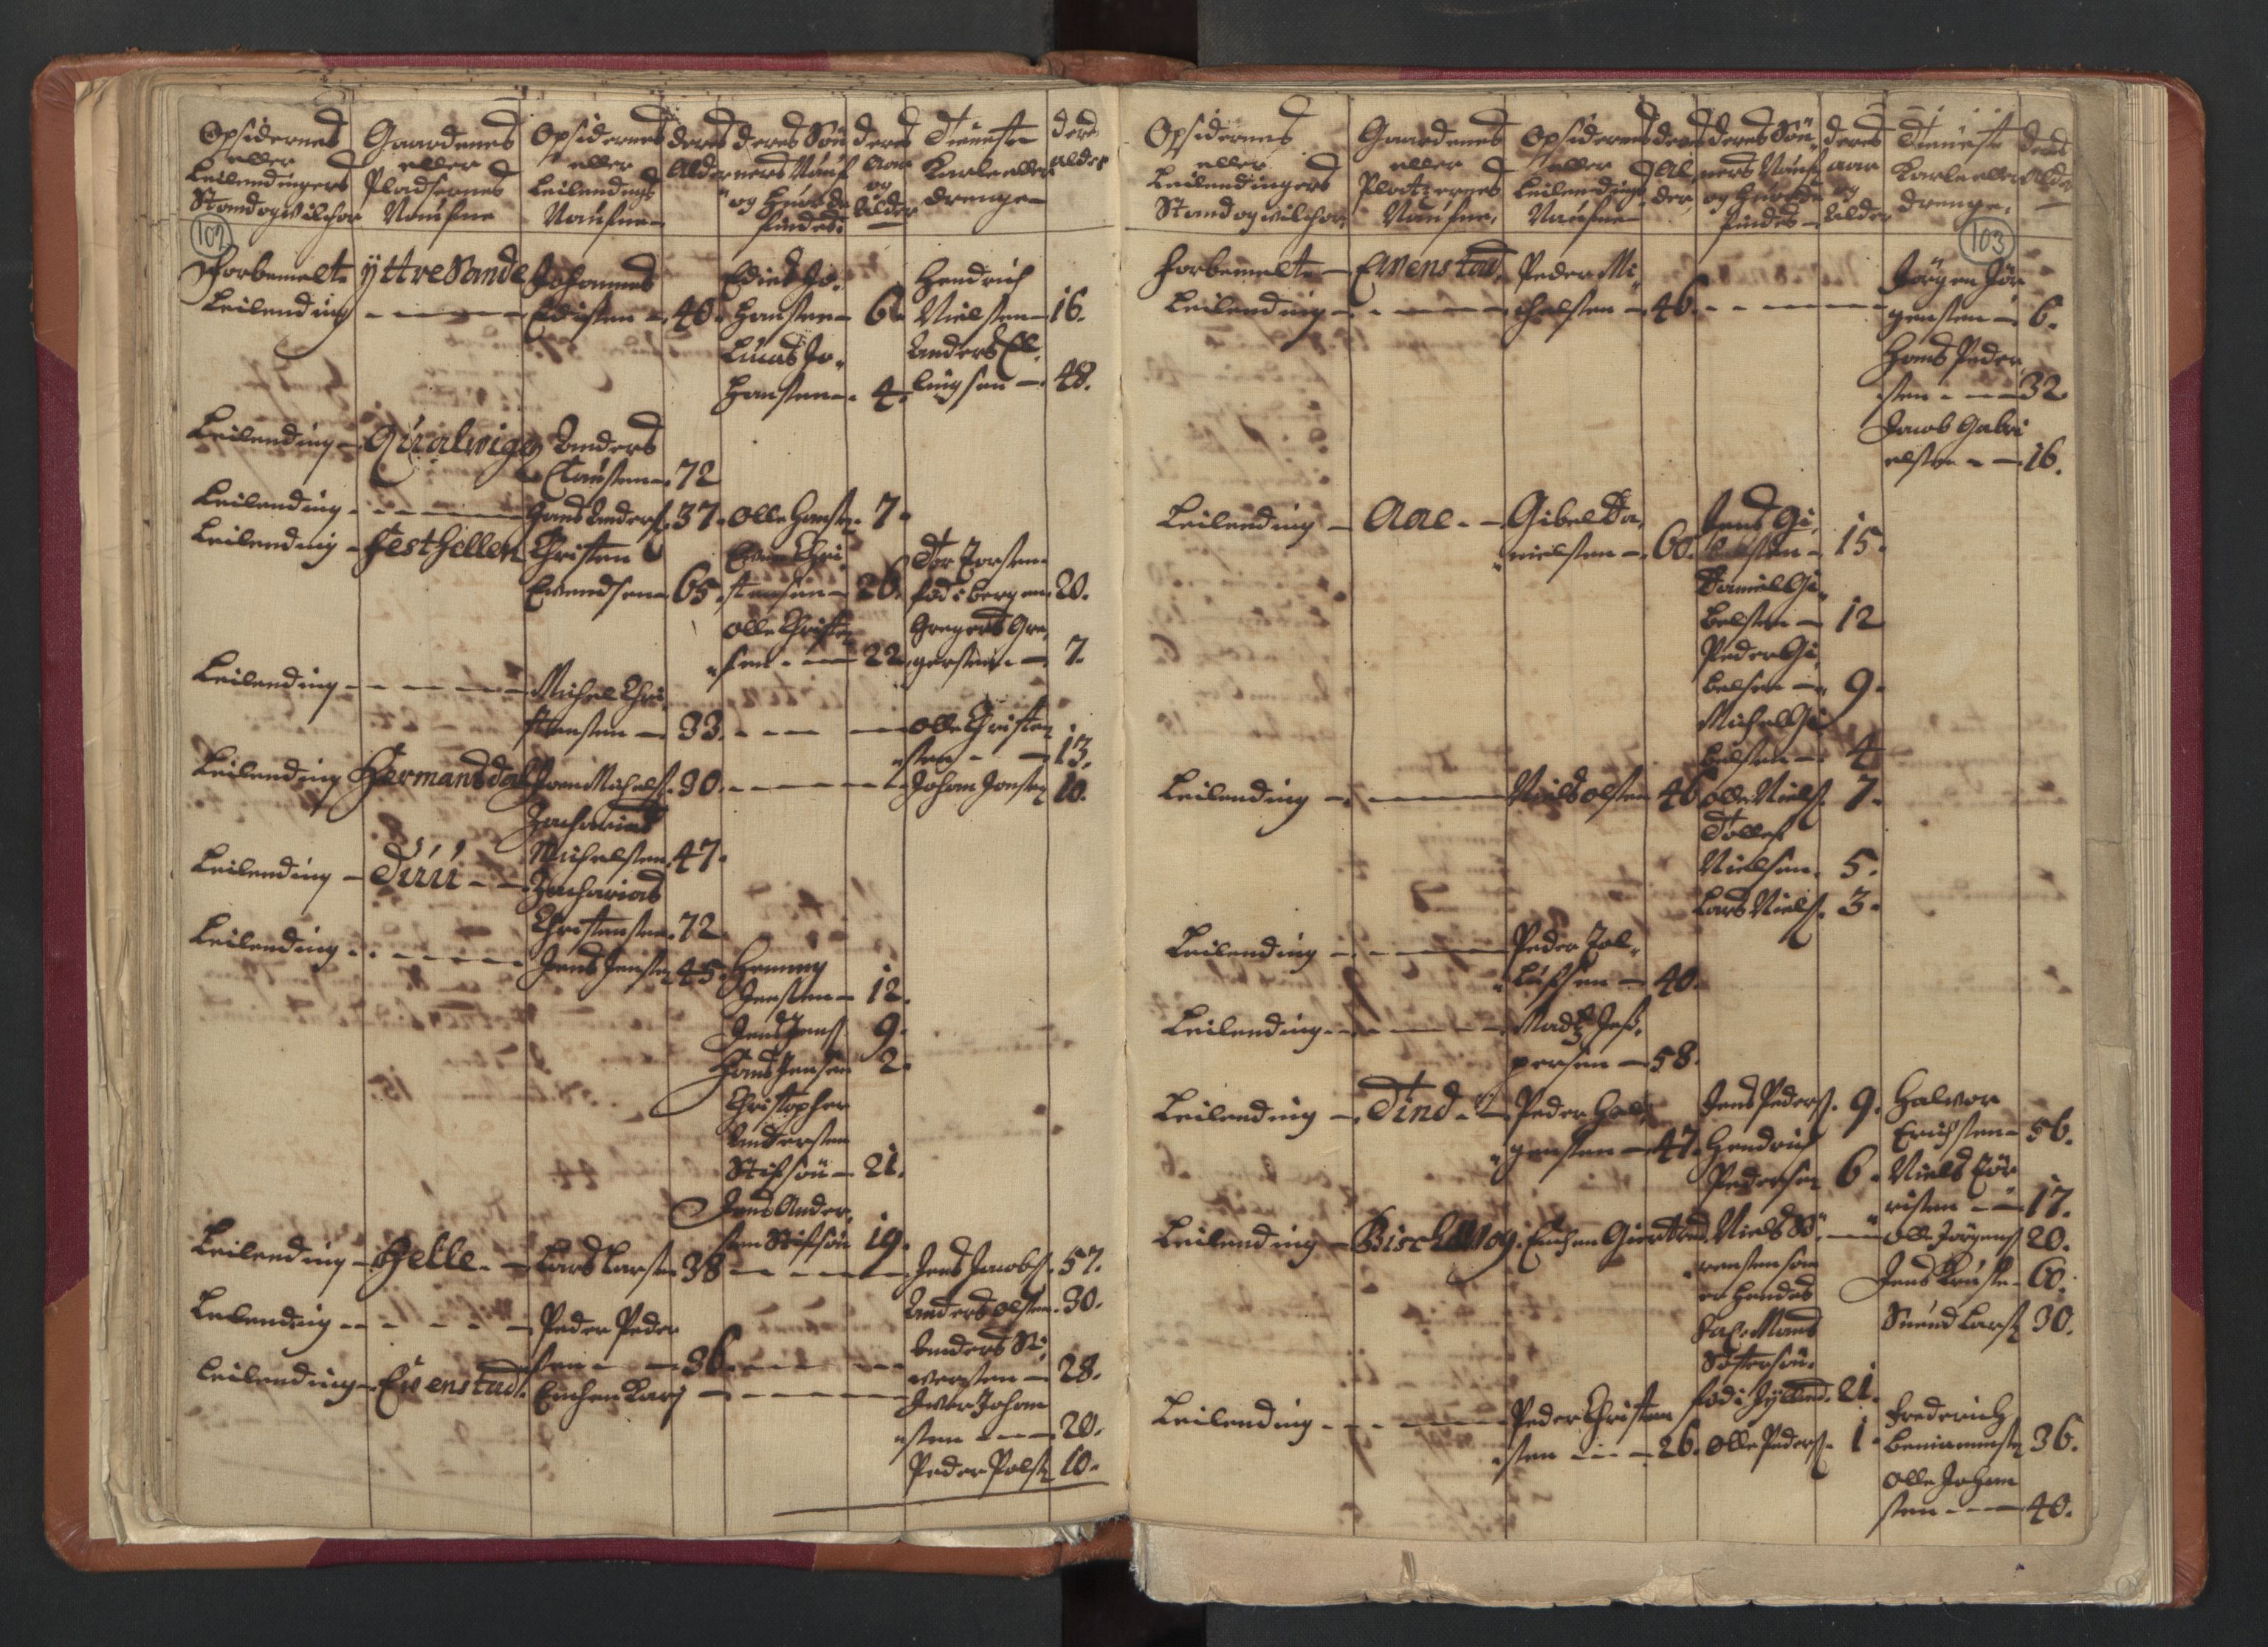 RA, Census (manntall) 1701, no. 18: Vesterålen, Andenes and Lofoten fogderi, 1701, p. 102-103